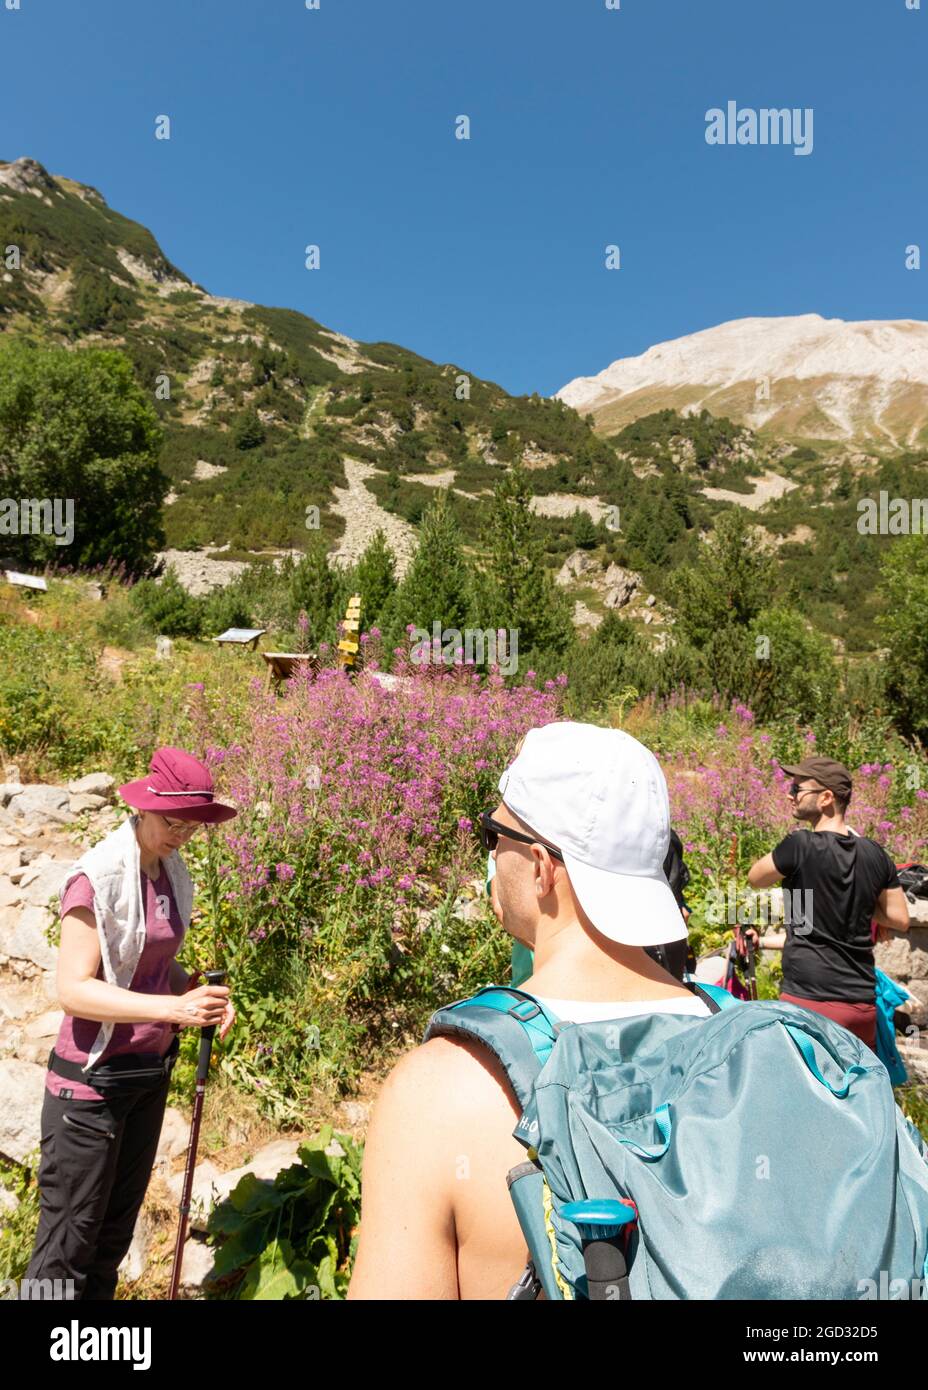 Bulgarie randonnée. Les randonneurs se préparent à la randonnée dans le parc national et réserve de Pirin, montagne de Pirin, Bulgarie, Balkans, Europe Banque D'Images